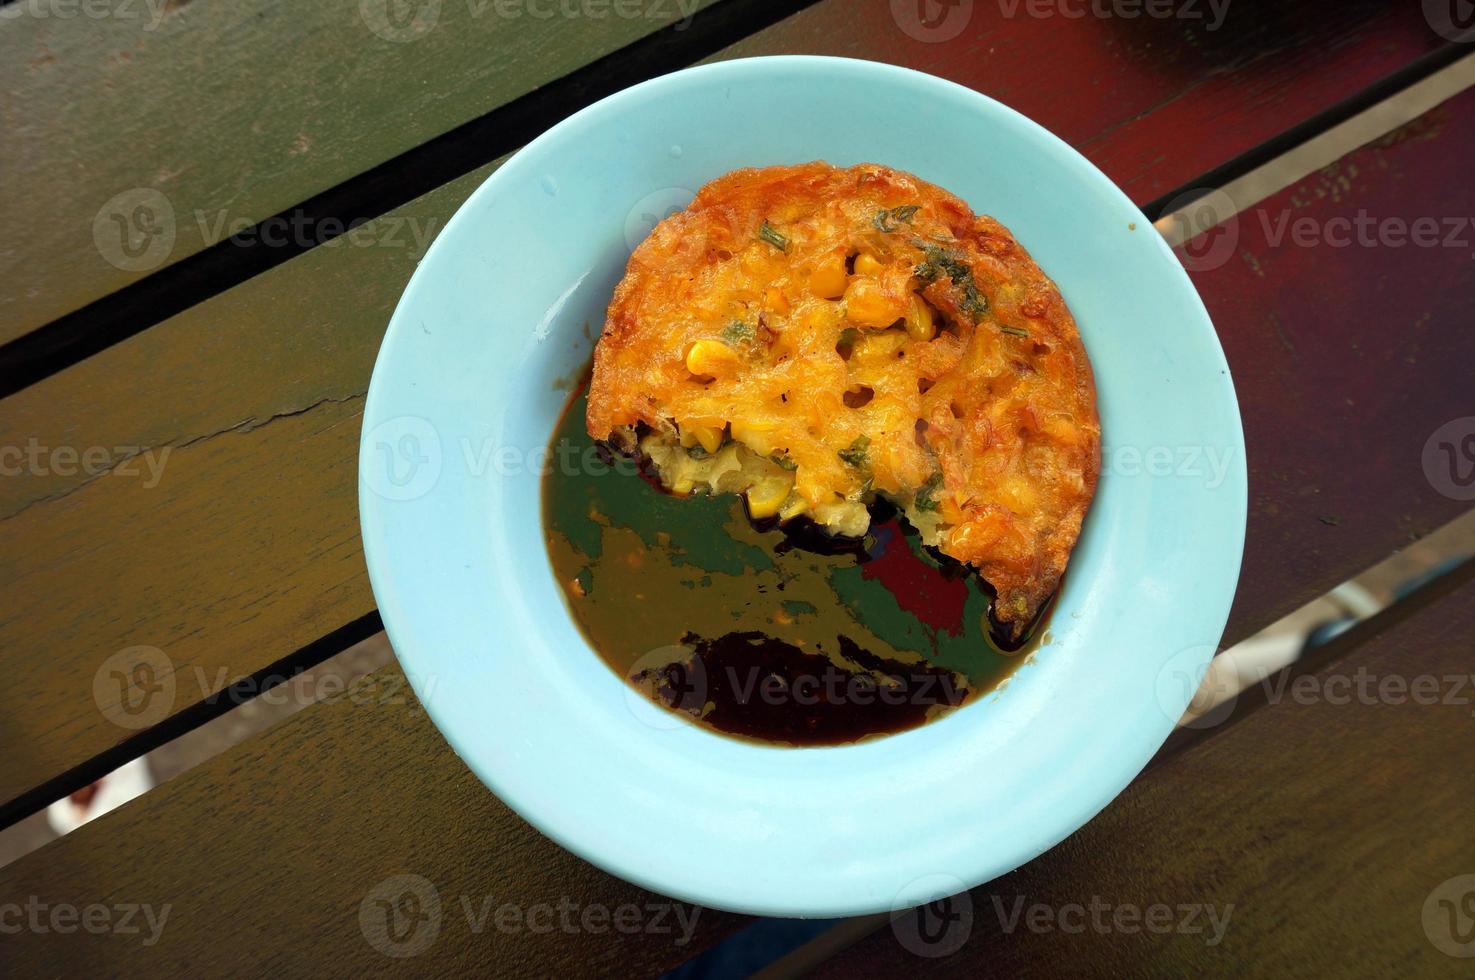 bakwan jagung o buñuelos de maíz. buñuelos de maíz ya comidos con salsa de soya petis foto